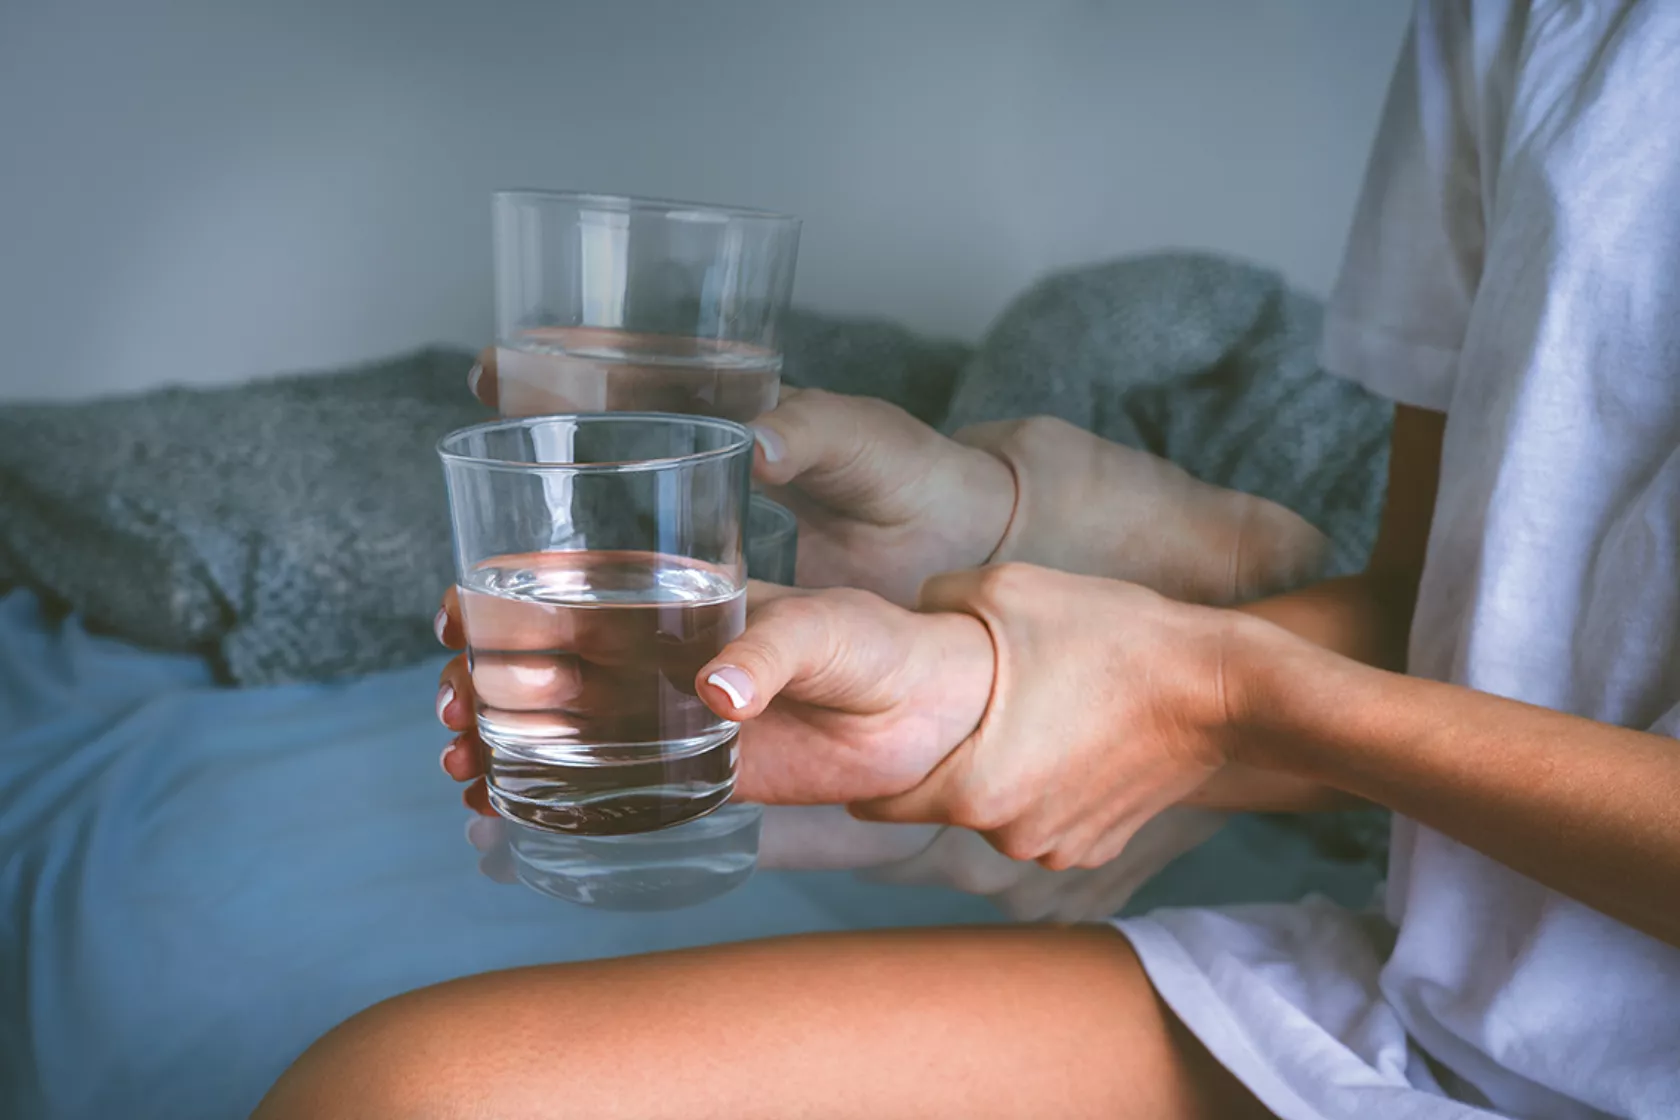 Foto einer Hand, die zittert - die Person hält ein Wasserglas und hält mit der anderen Hand das Handgelenk fest.